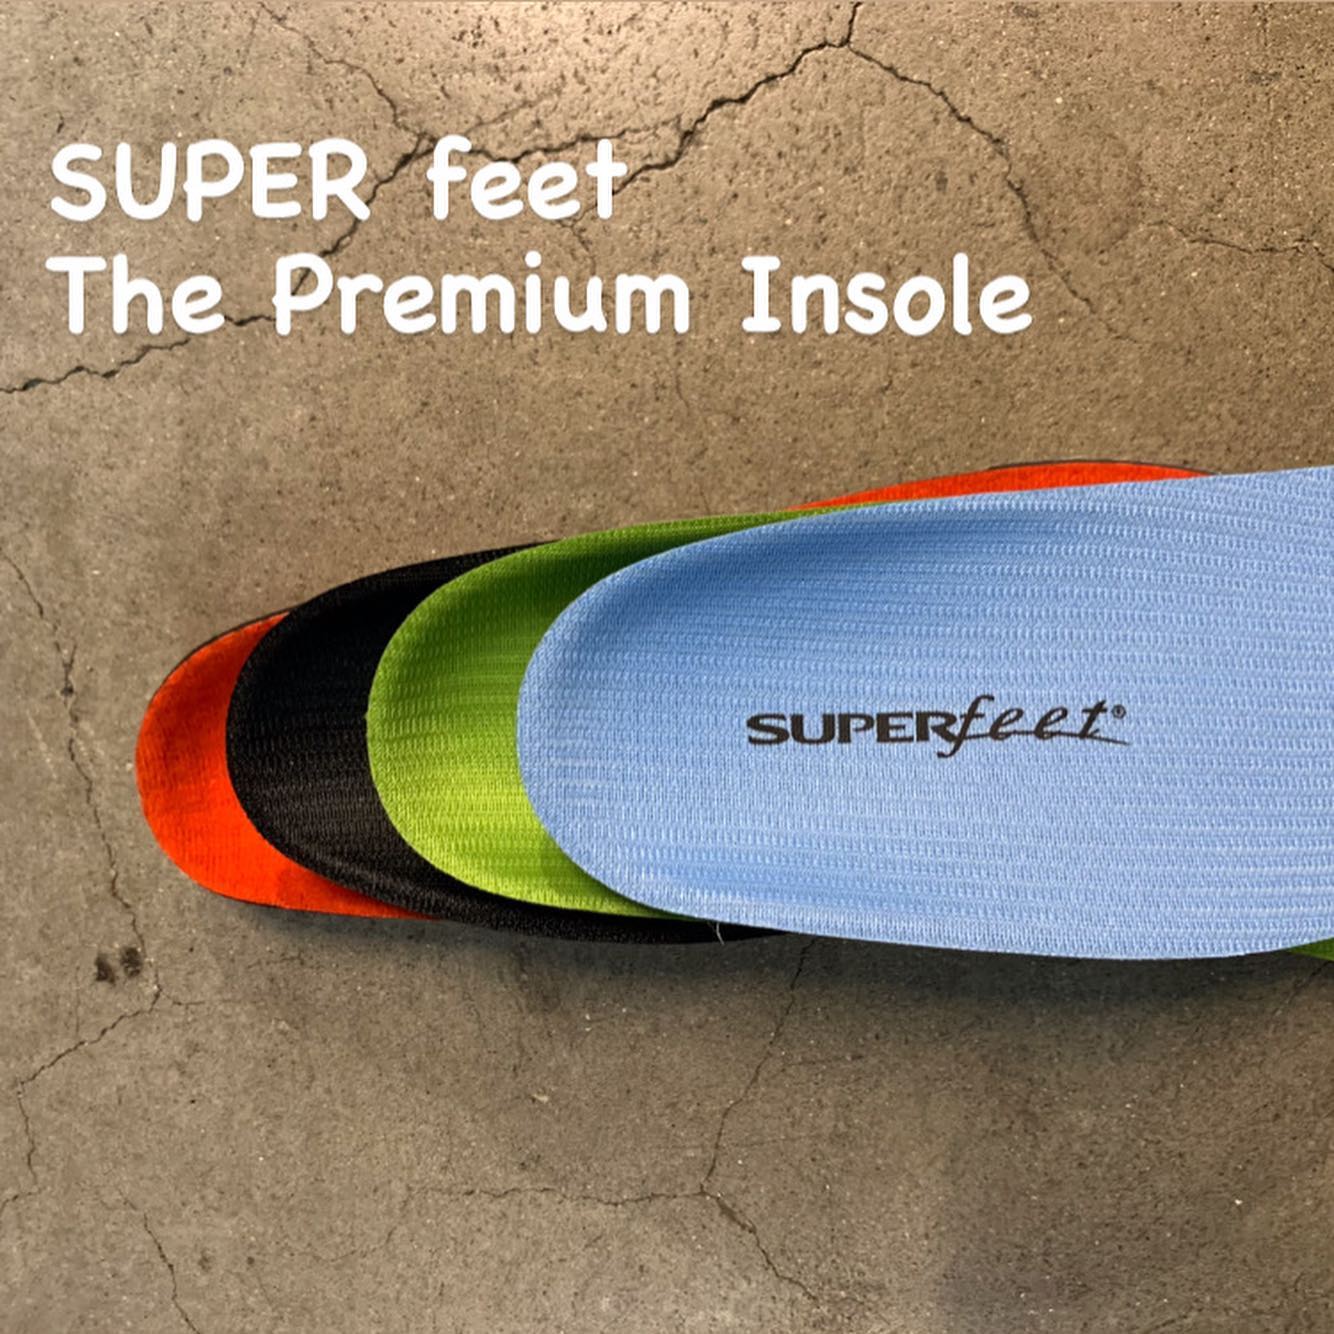 SUPER feet 様々な条件に合うインソールをご用意しています。